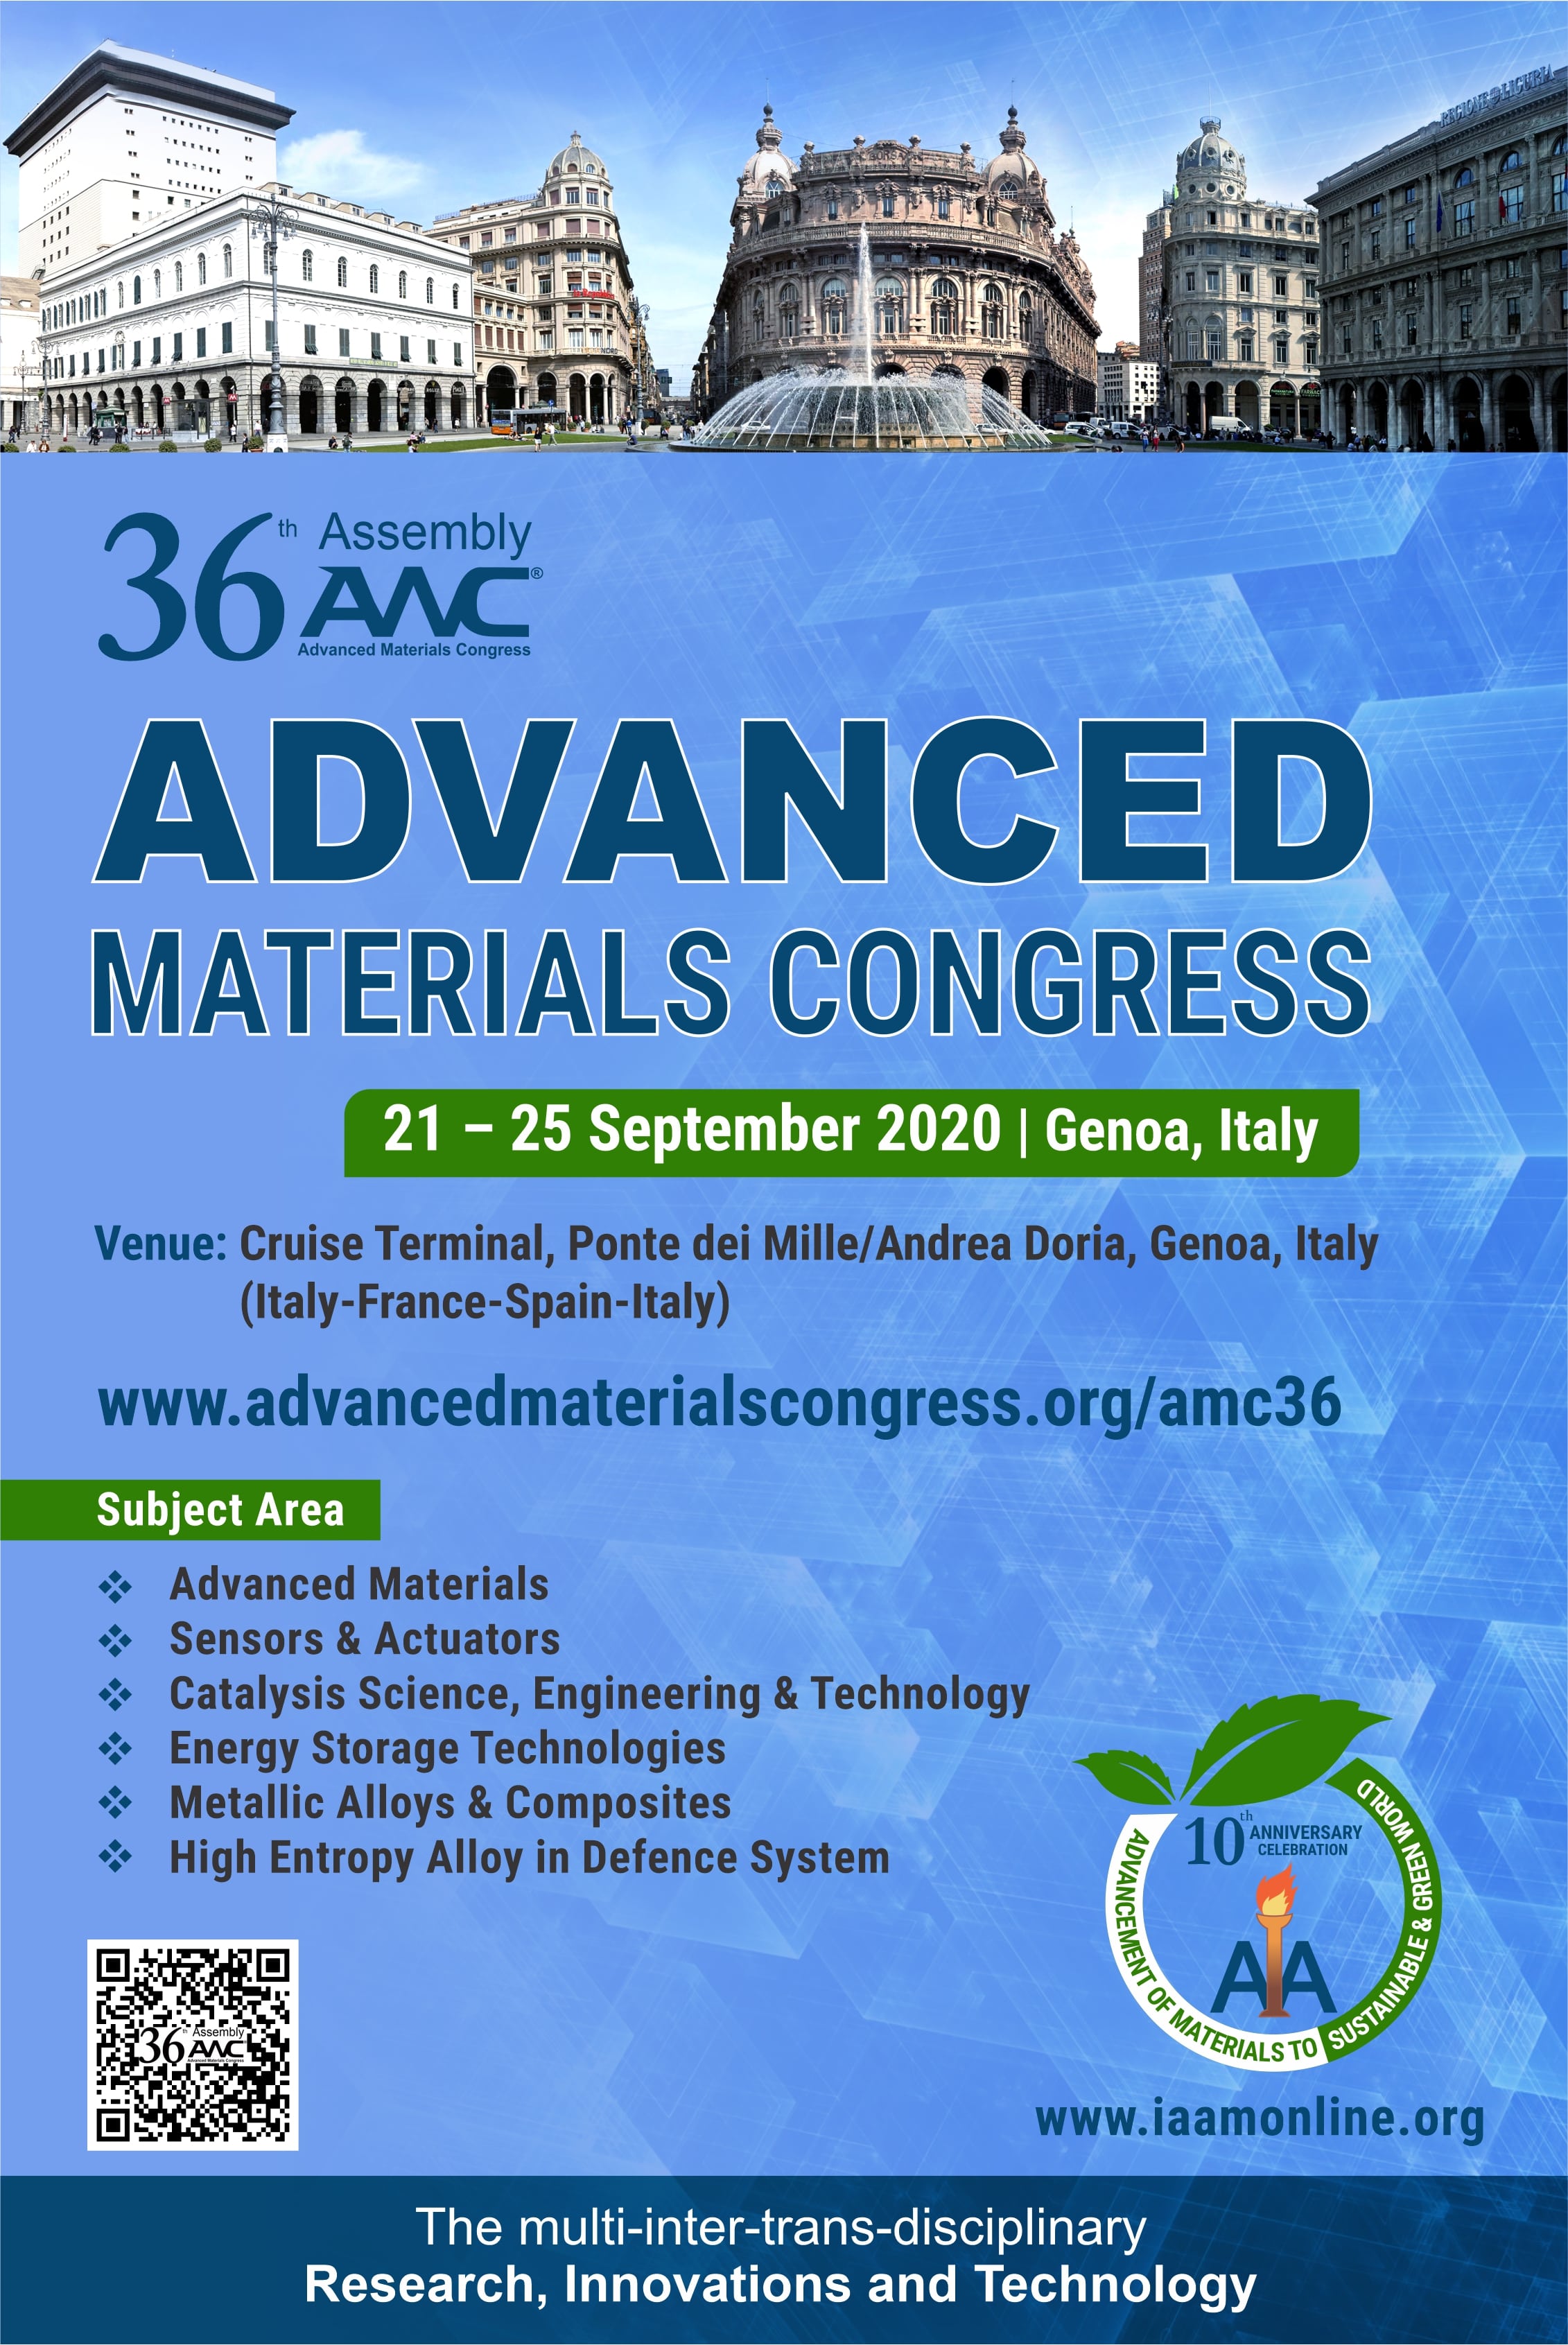 36th Assembly of Advanced Materials Congress 2020, Ponte dei Mille/Andrea Doria, Genoa, Italy